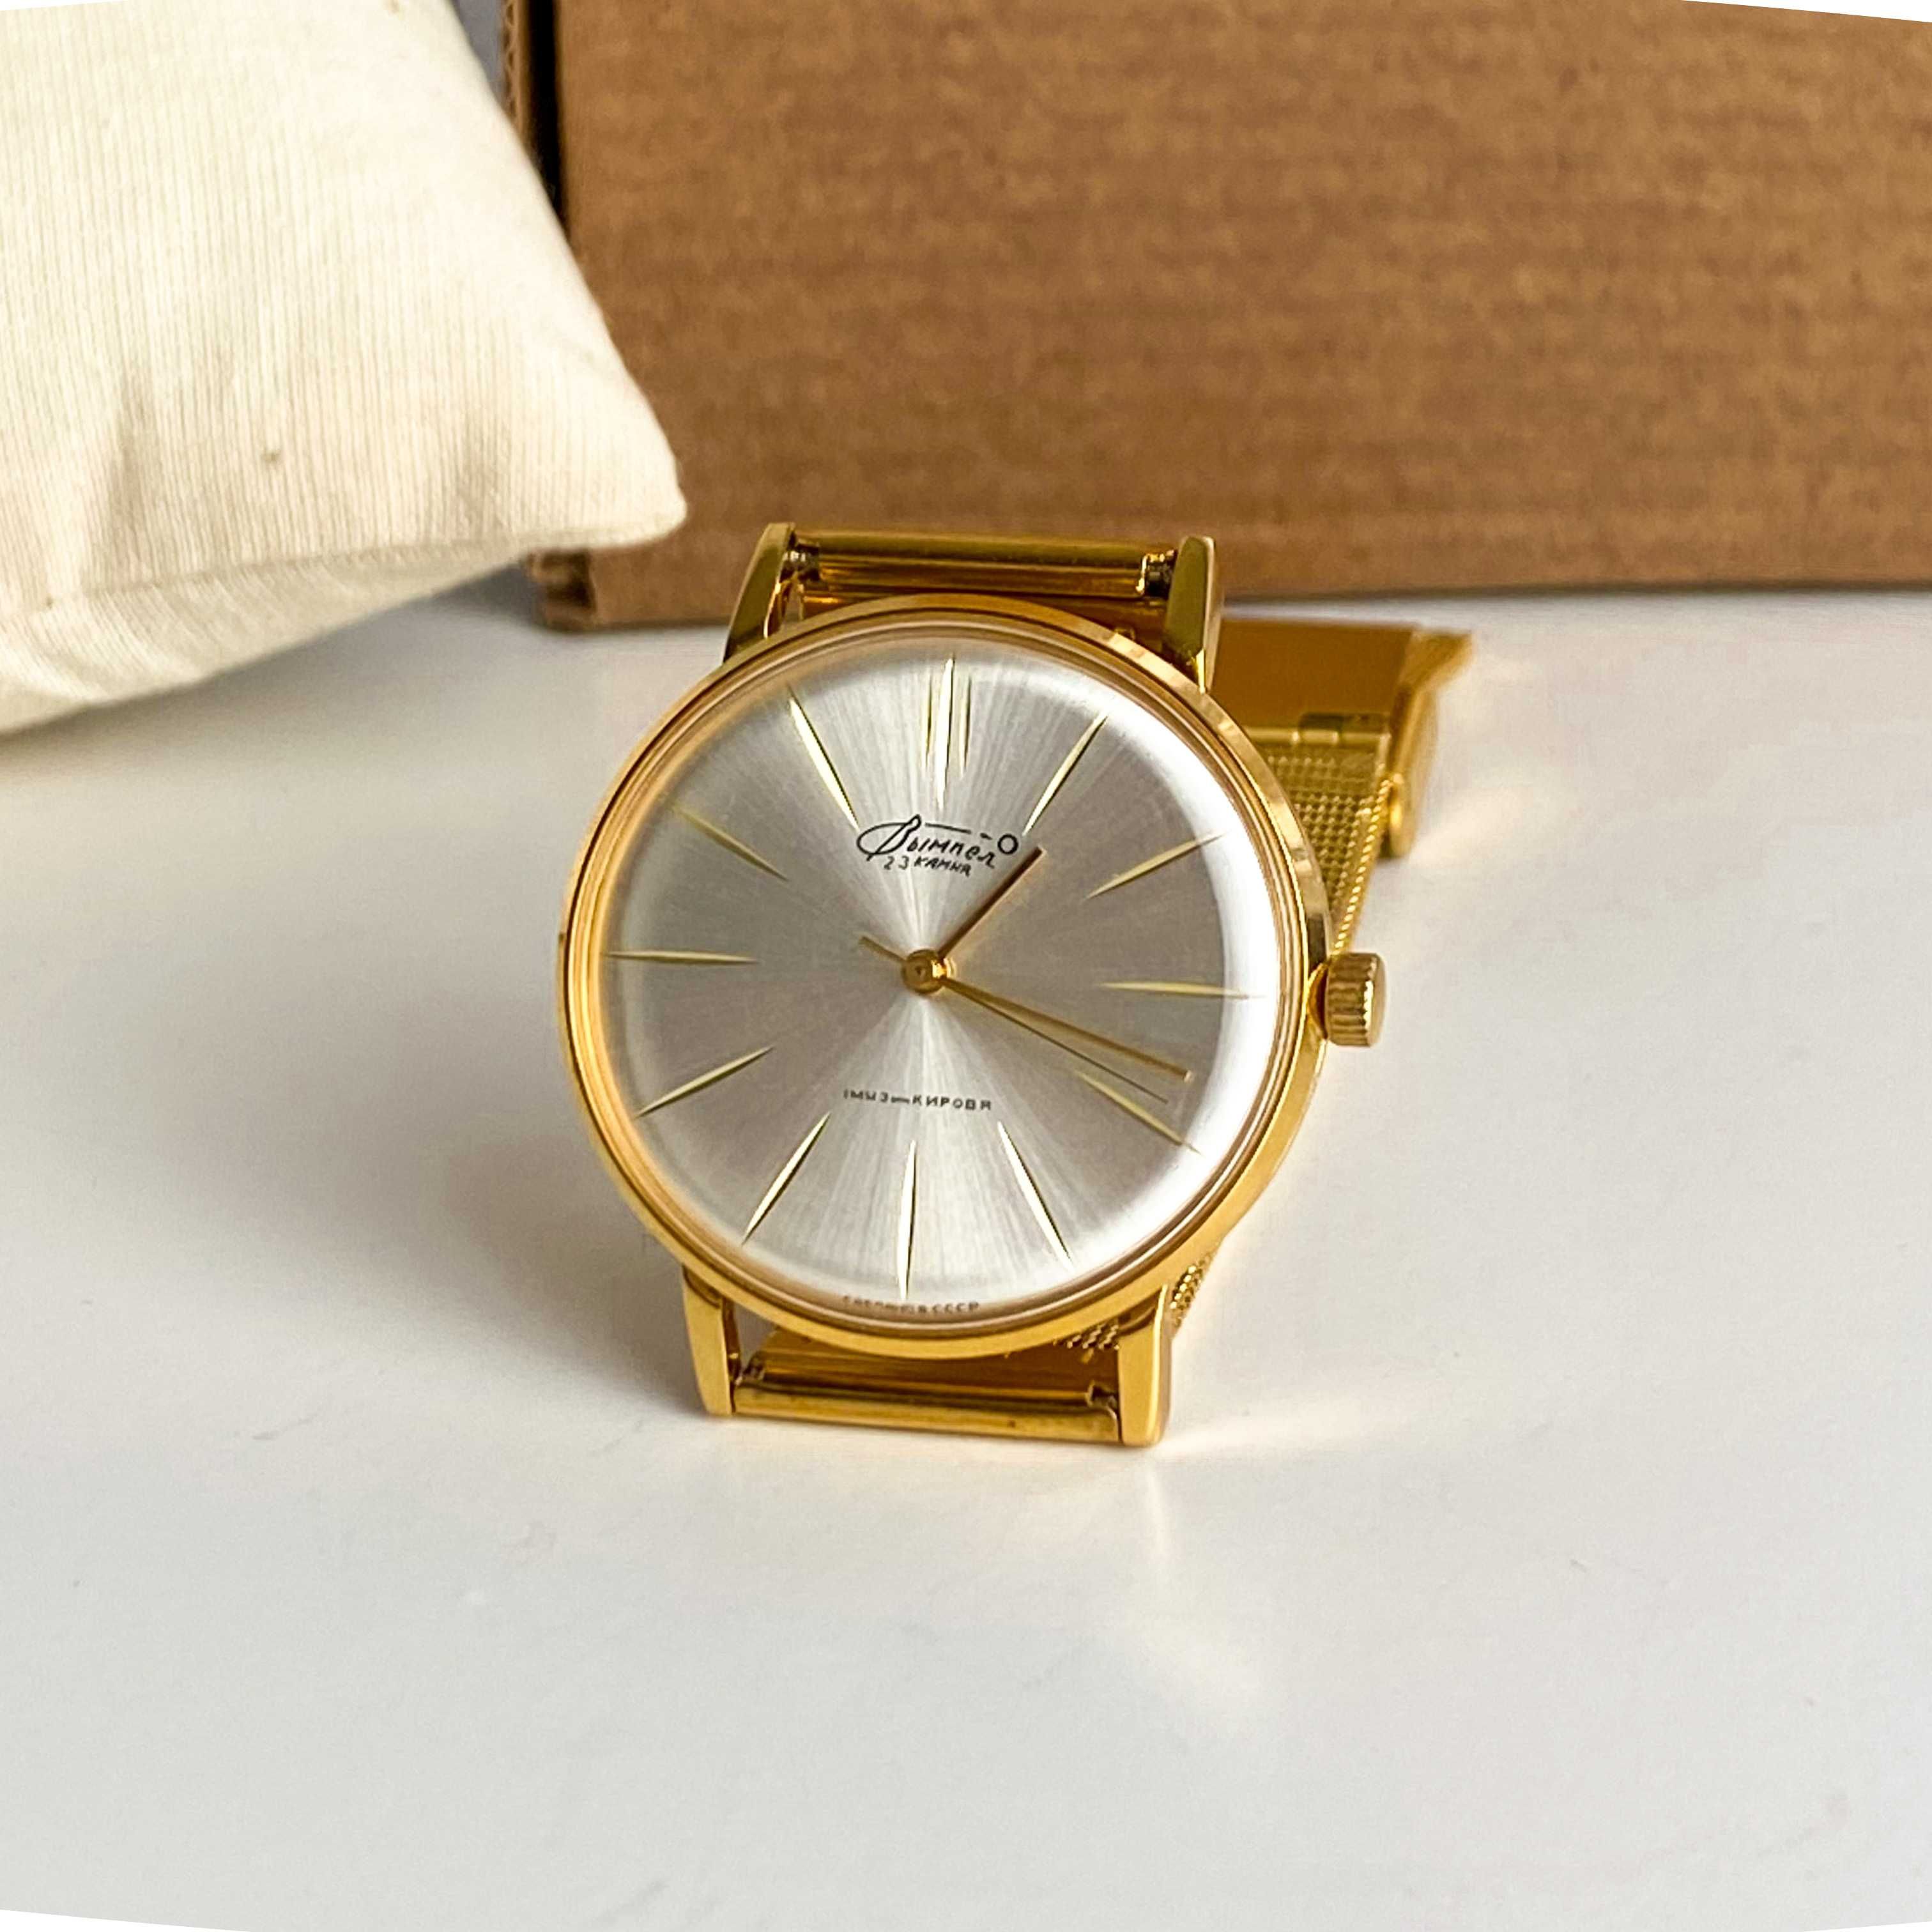 Cienki garniturowy zegarek klasyczny Poljot, zegarek w złotym kolorze